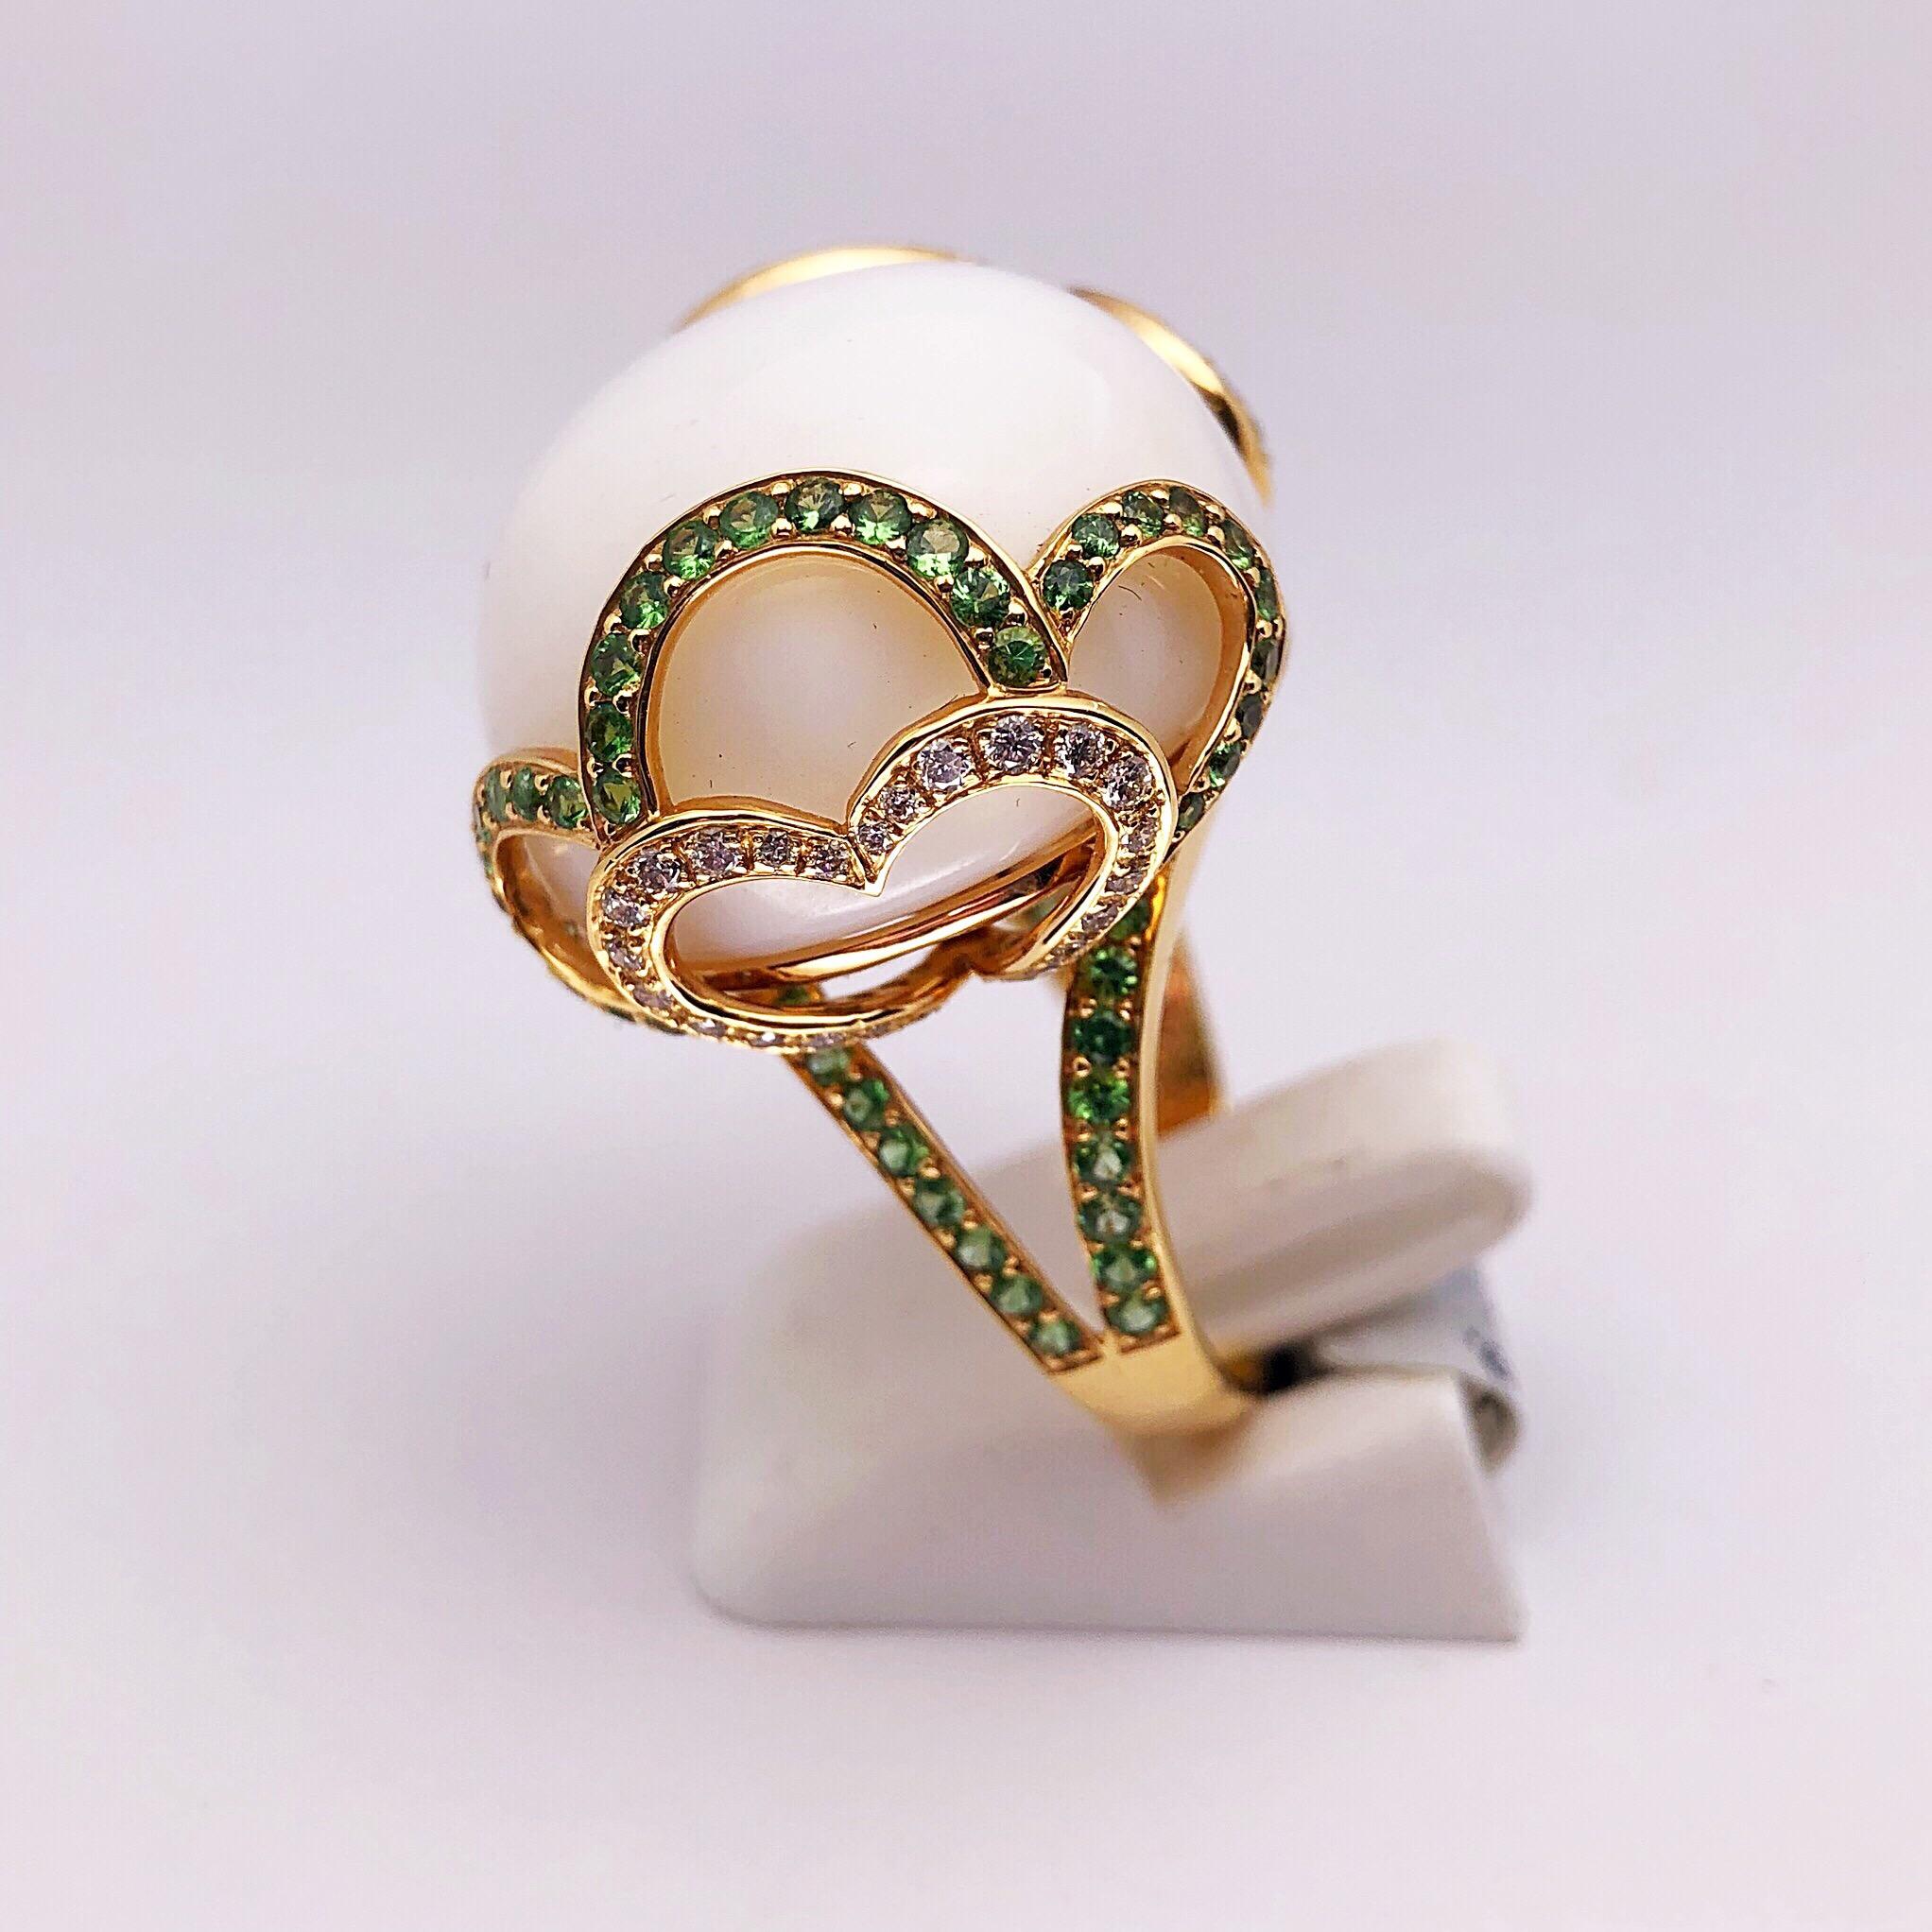 Lustig und kokett - so lässt sich dieser schöne Ring am besten beschreiben. Der große gewölbte milchig-weiße Cabochon-Opal mit einem Gewicht von 37,89 Karat ist in eine moderne Fassung aus 18-karätigem Roségold gefasst. Eine Muschelverzierung und